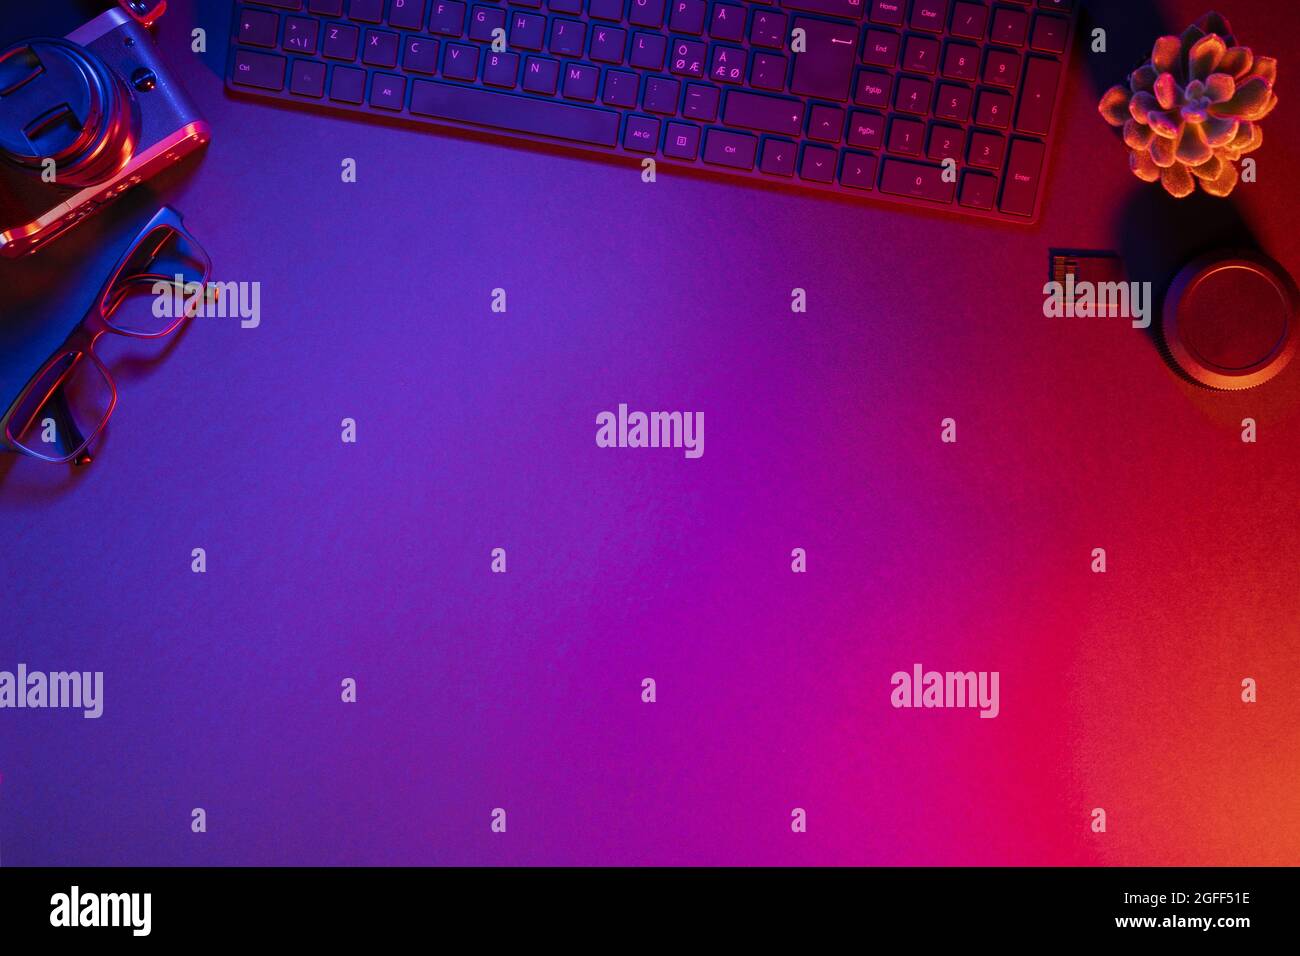 Vista superior del teclado del ordenador con cámara sobre una mesa iluminada Foto de stock